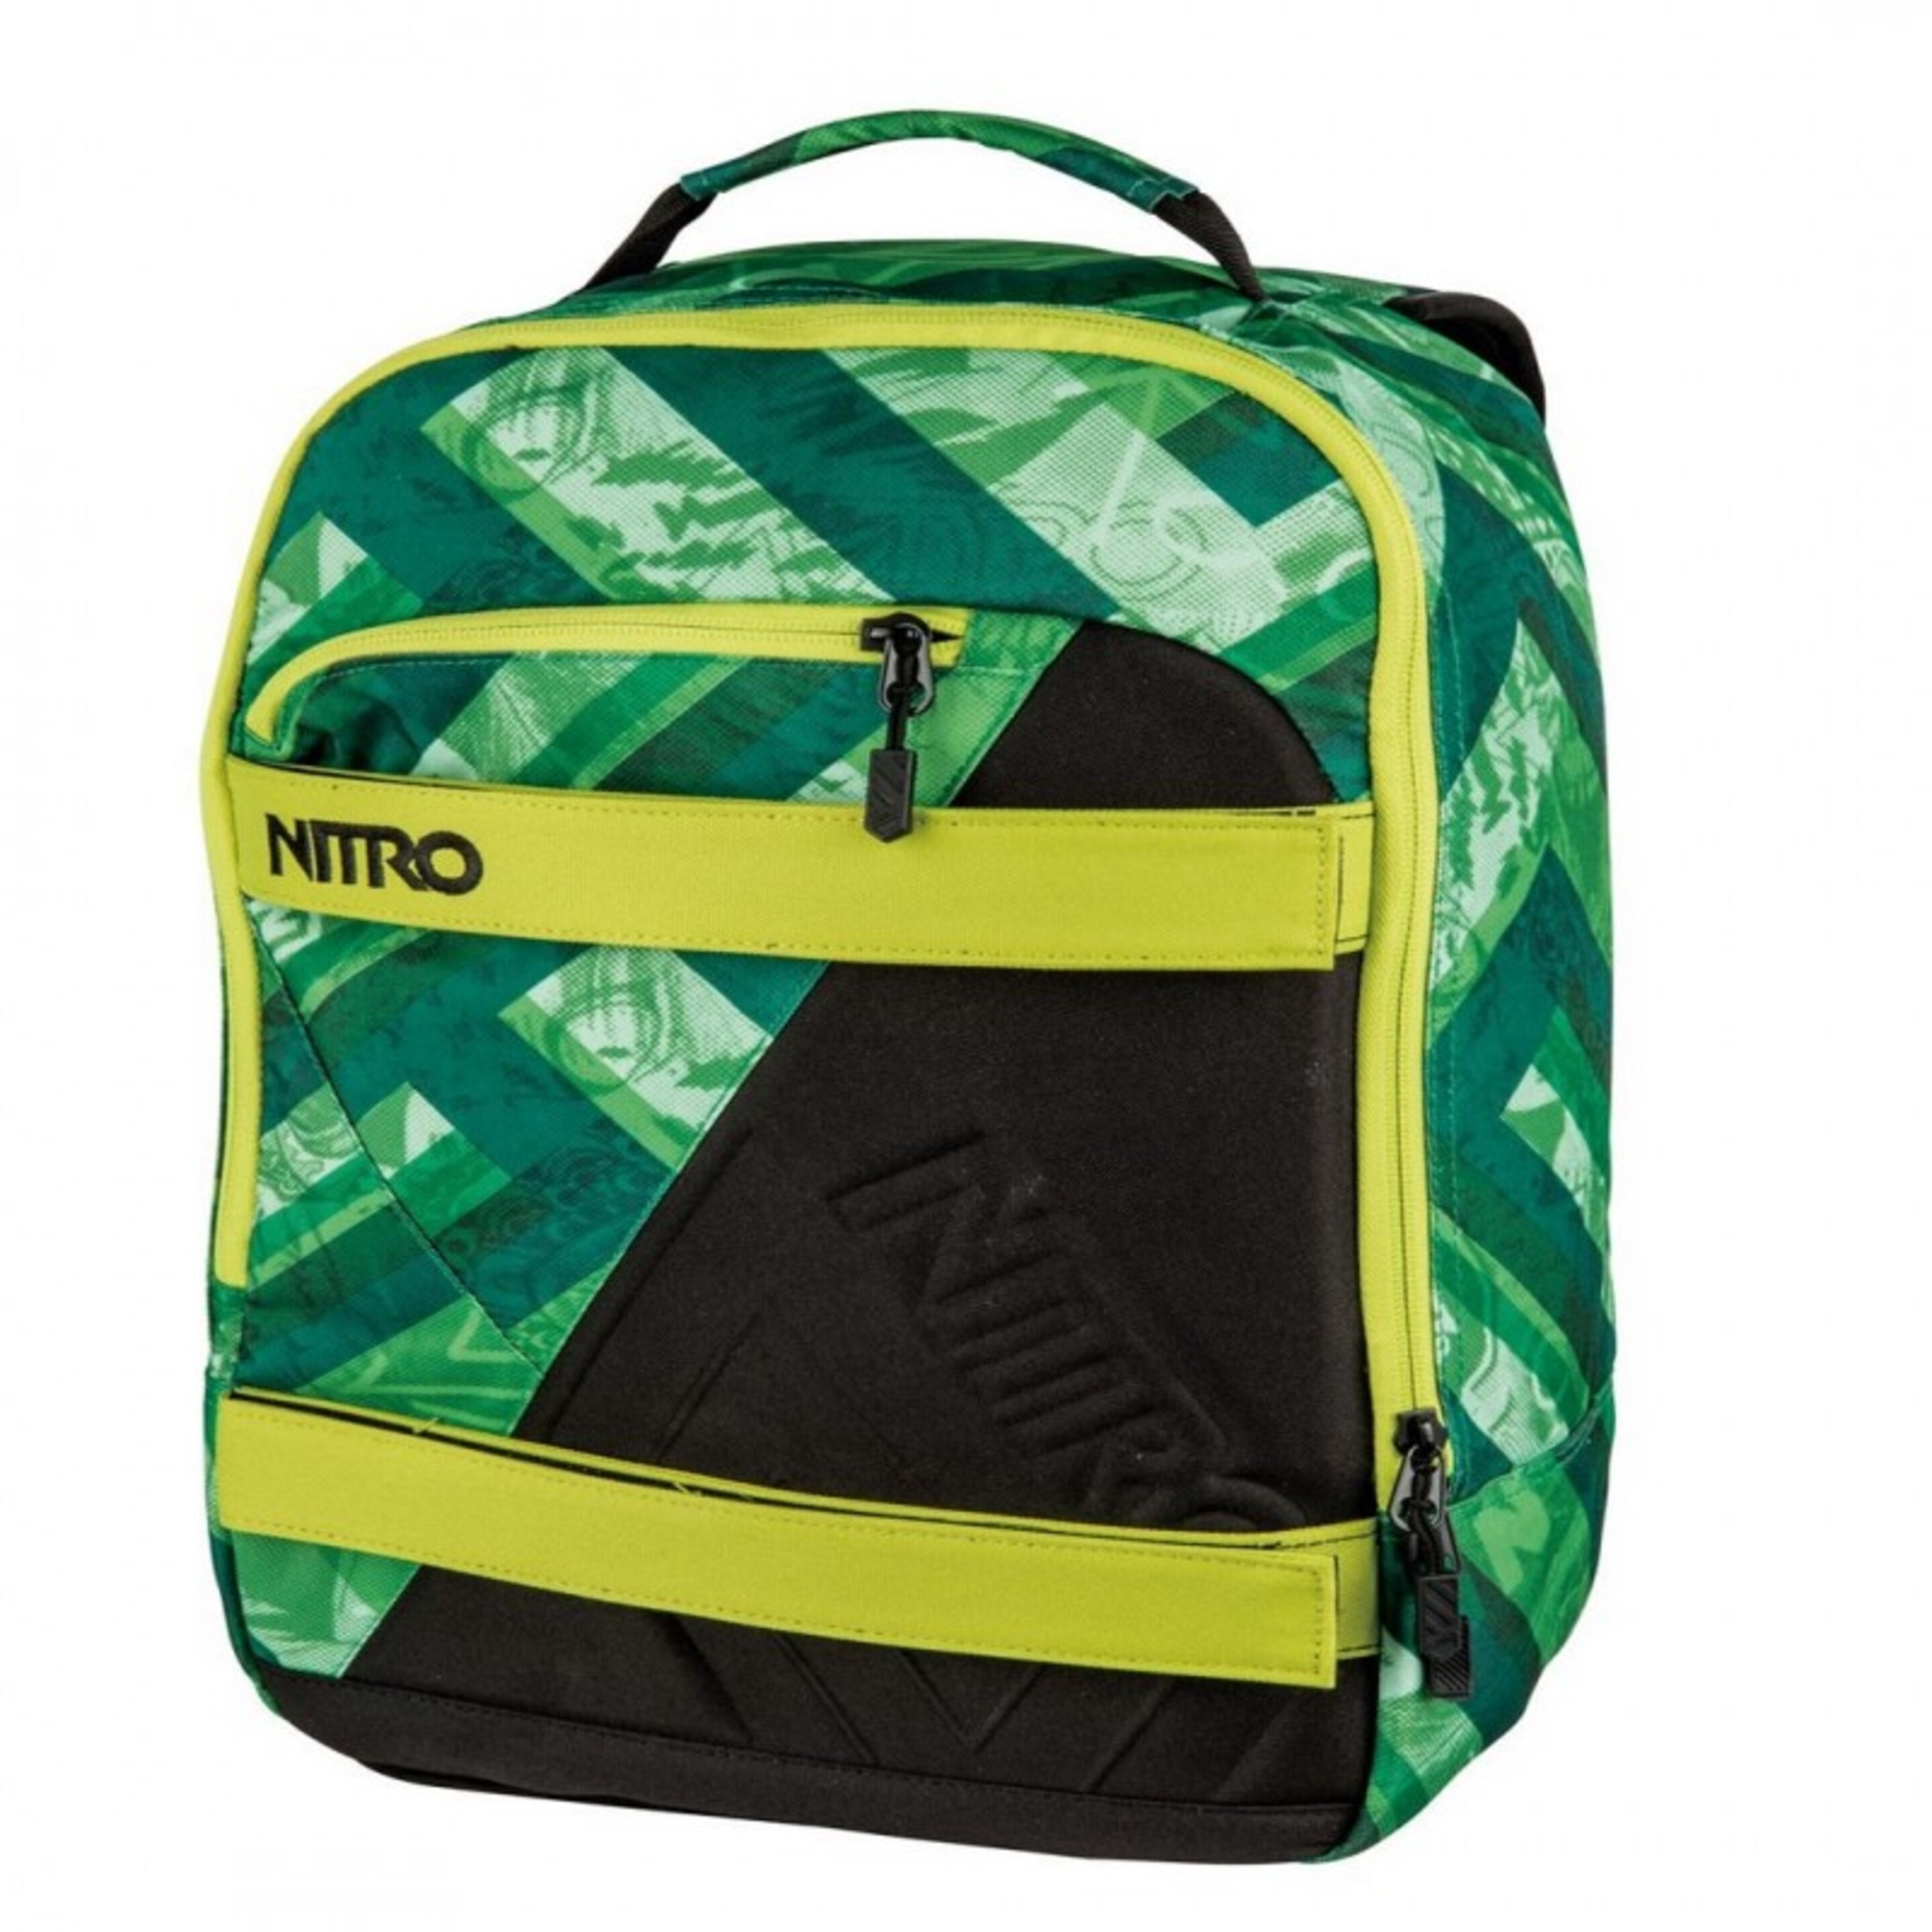 Nitro Axis Bag